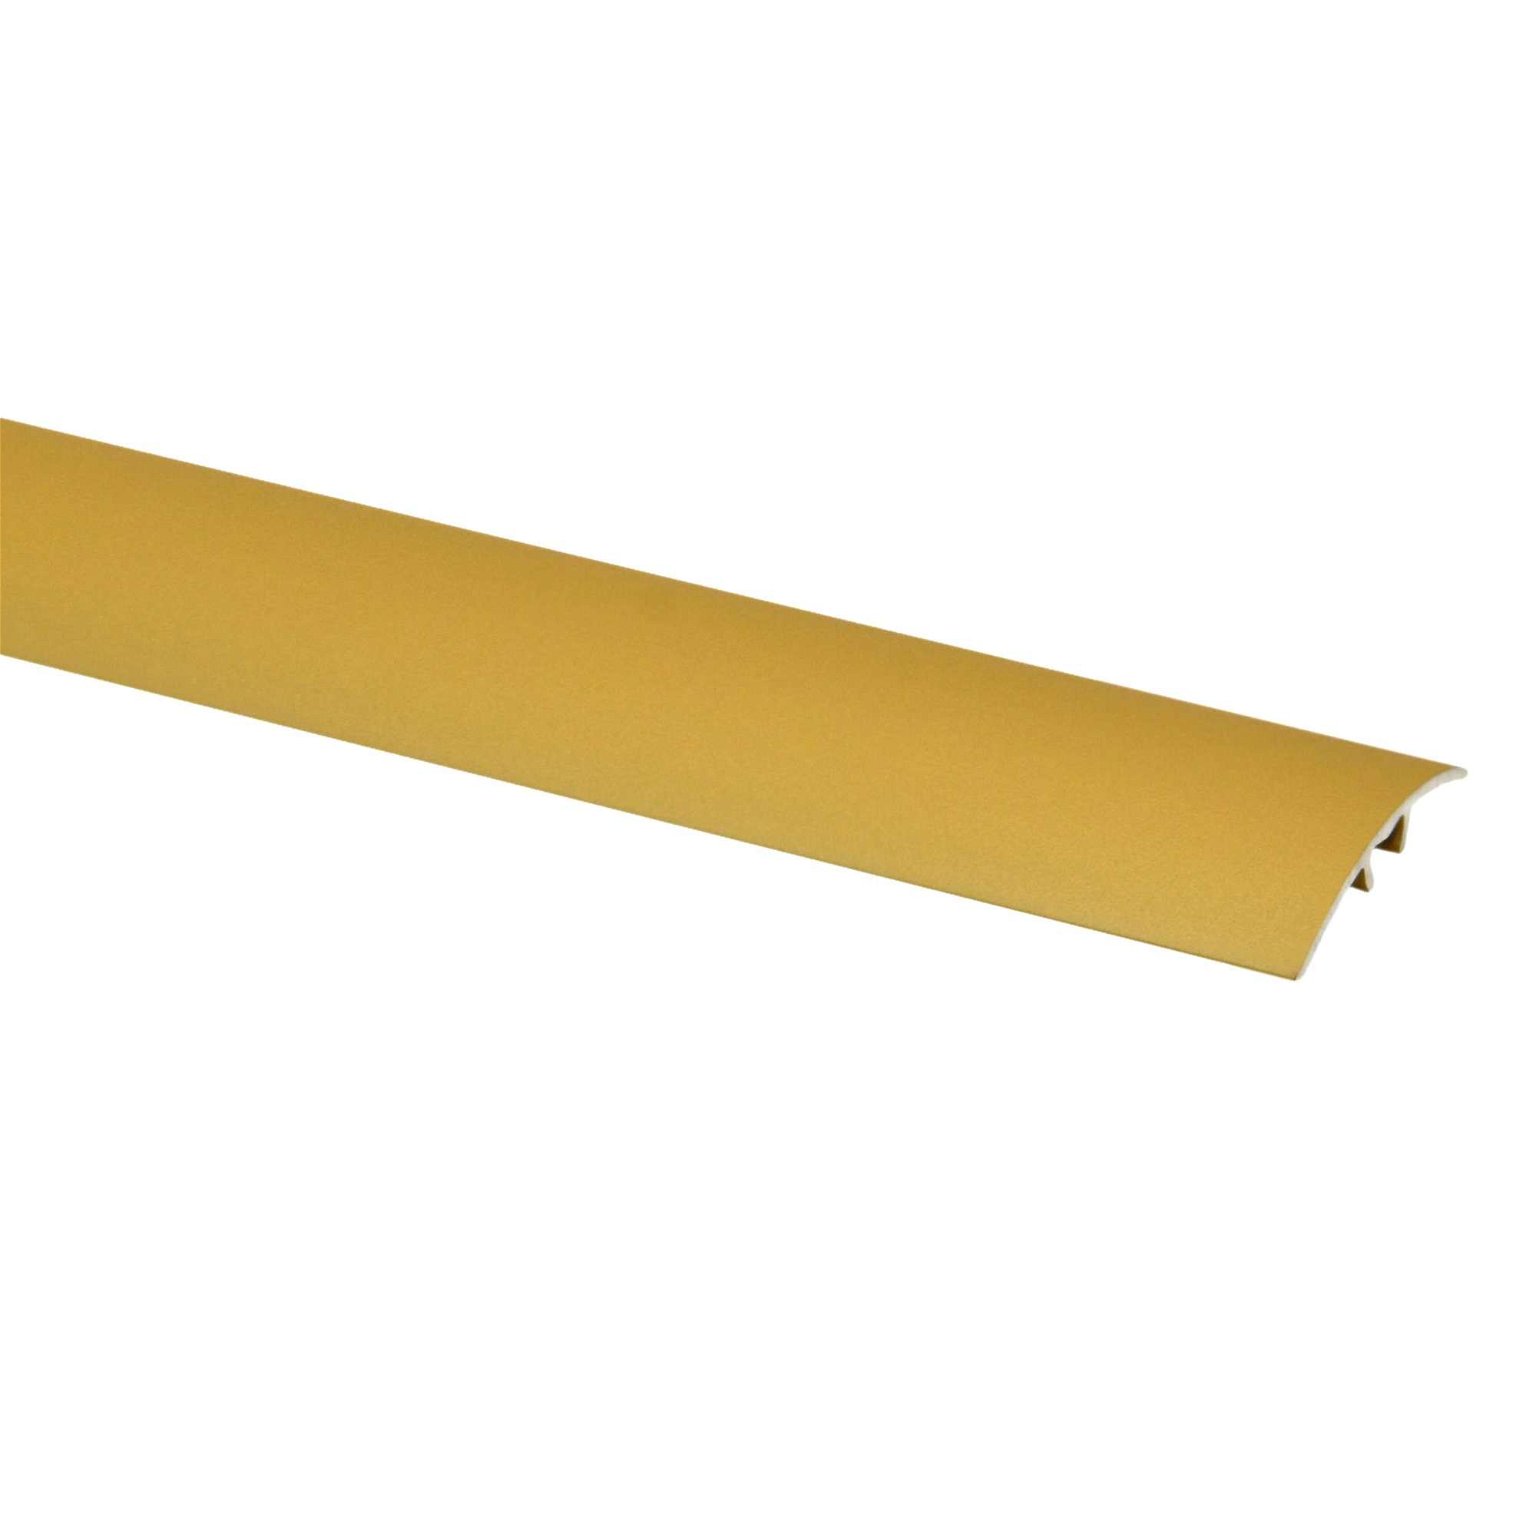 Aliumininė grindų juostelė SM1 W9, auksinio riešuto sp., 30 mm pločio, 93 cm ilgio